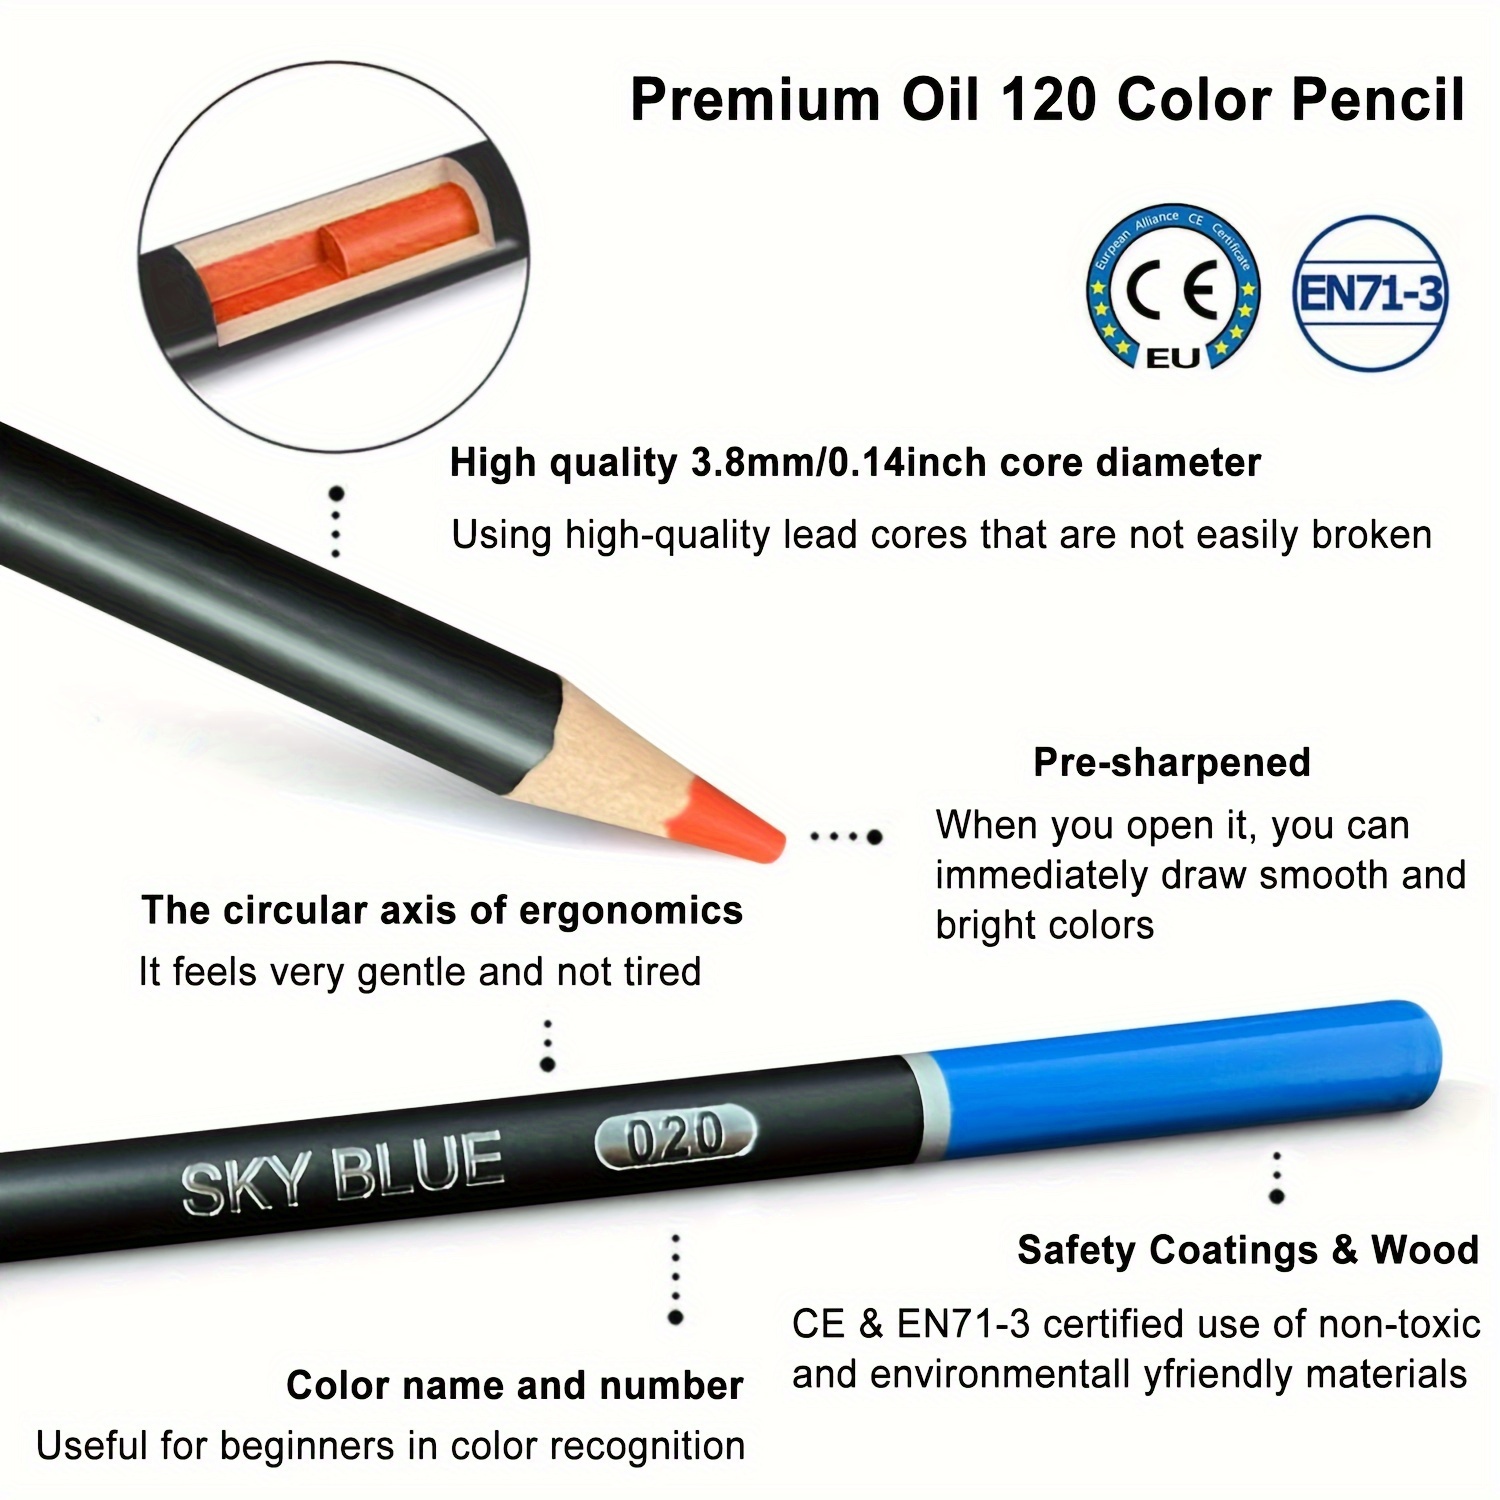 Utility Storage Box - Bright Color Multi Purpose Pencil Box for